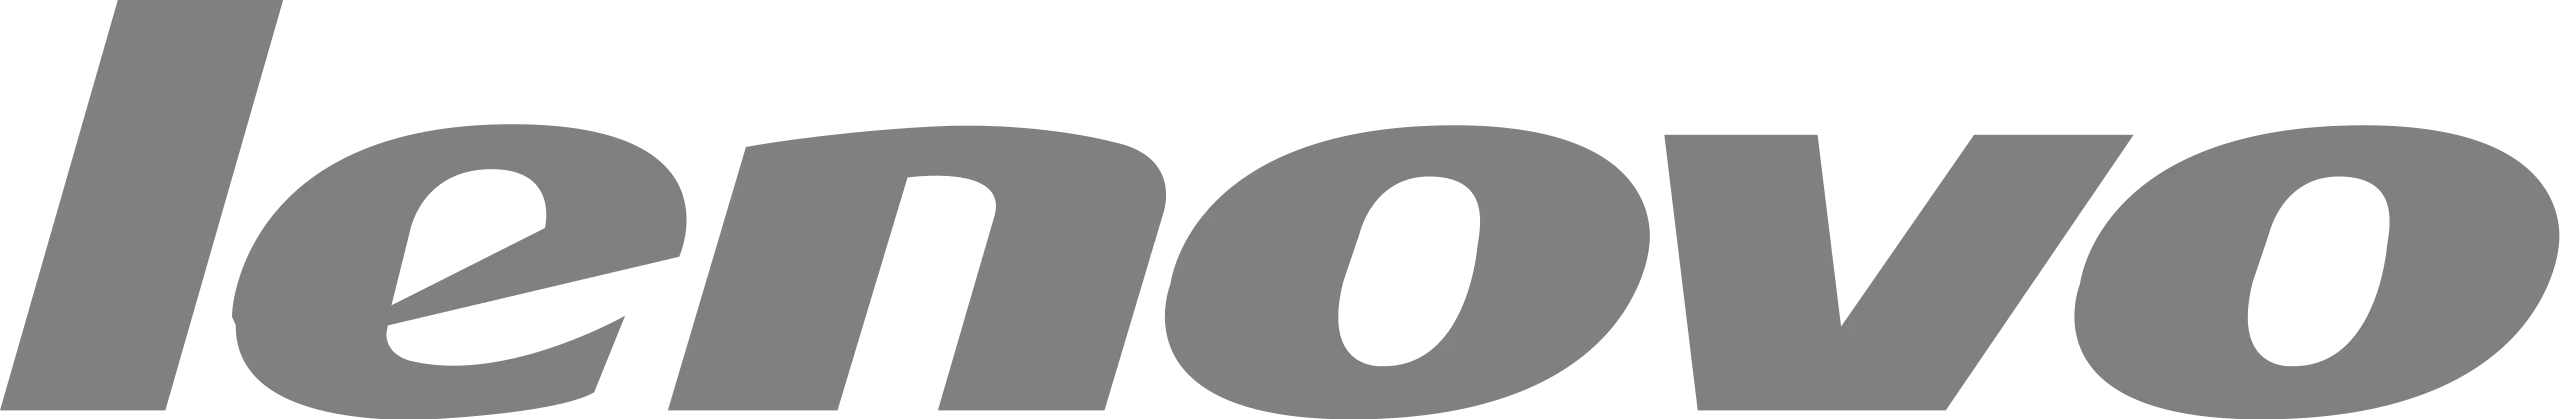 Logo for Lenovo